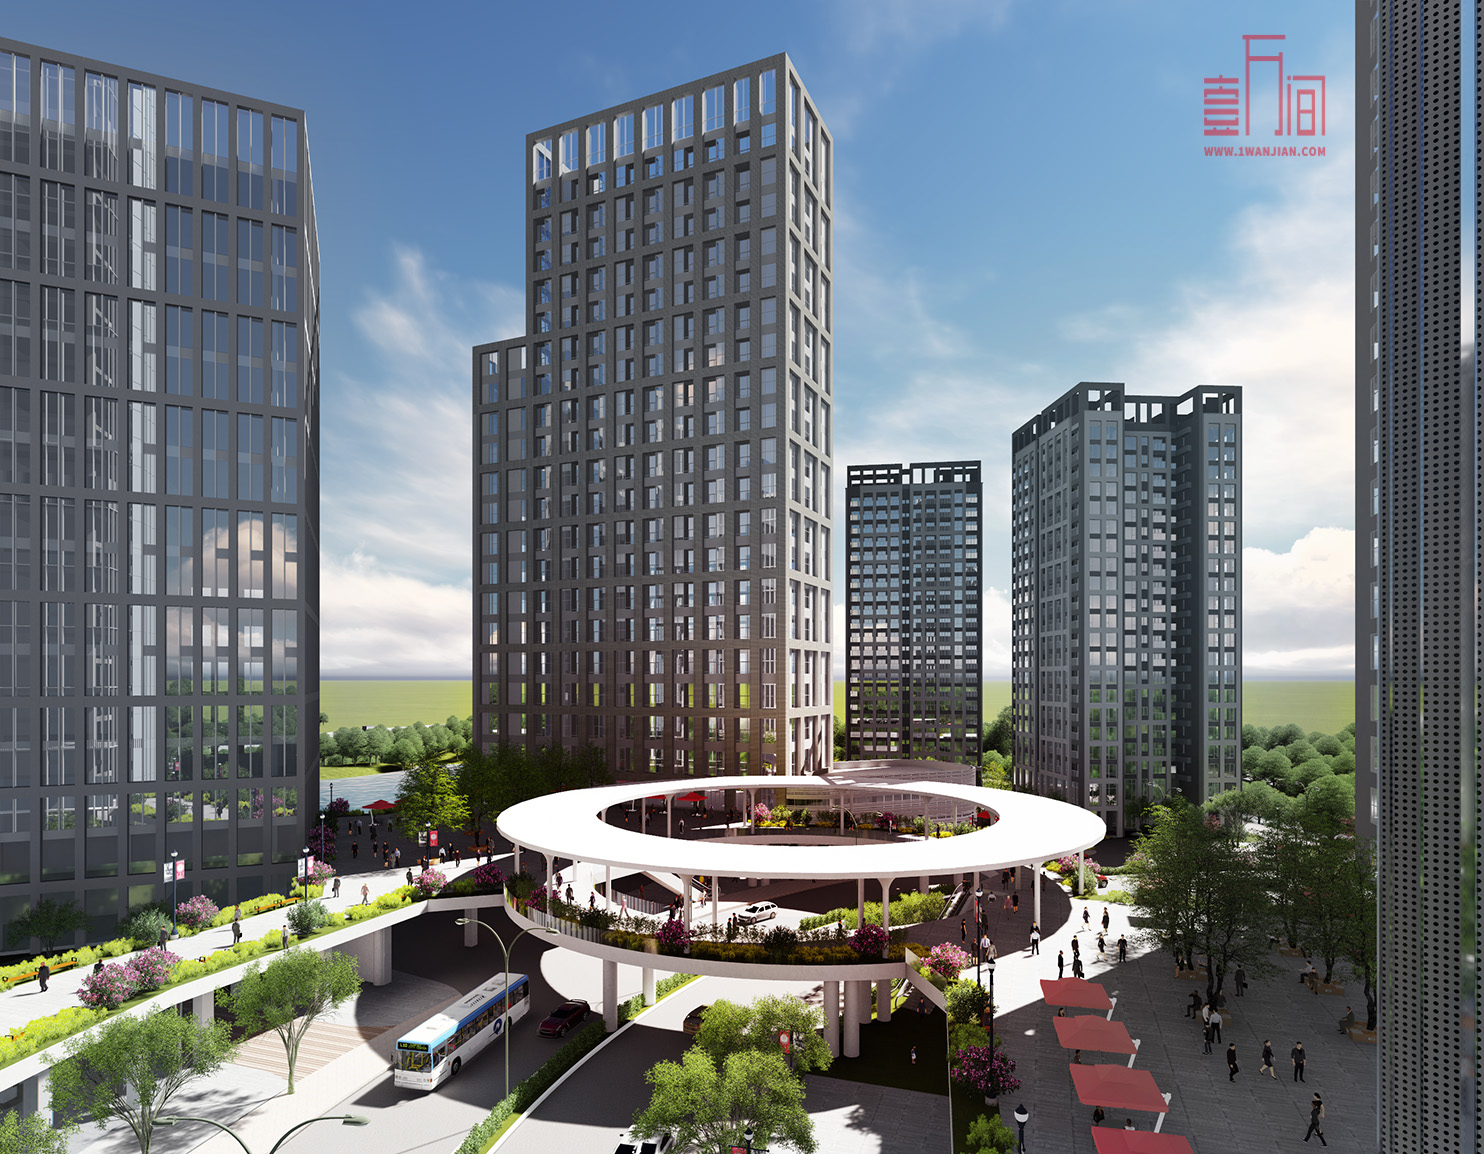 龙华发布2020年城市更新第三批计划草案-狮头岭村旧改项目